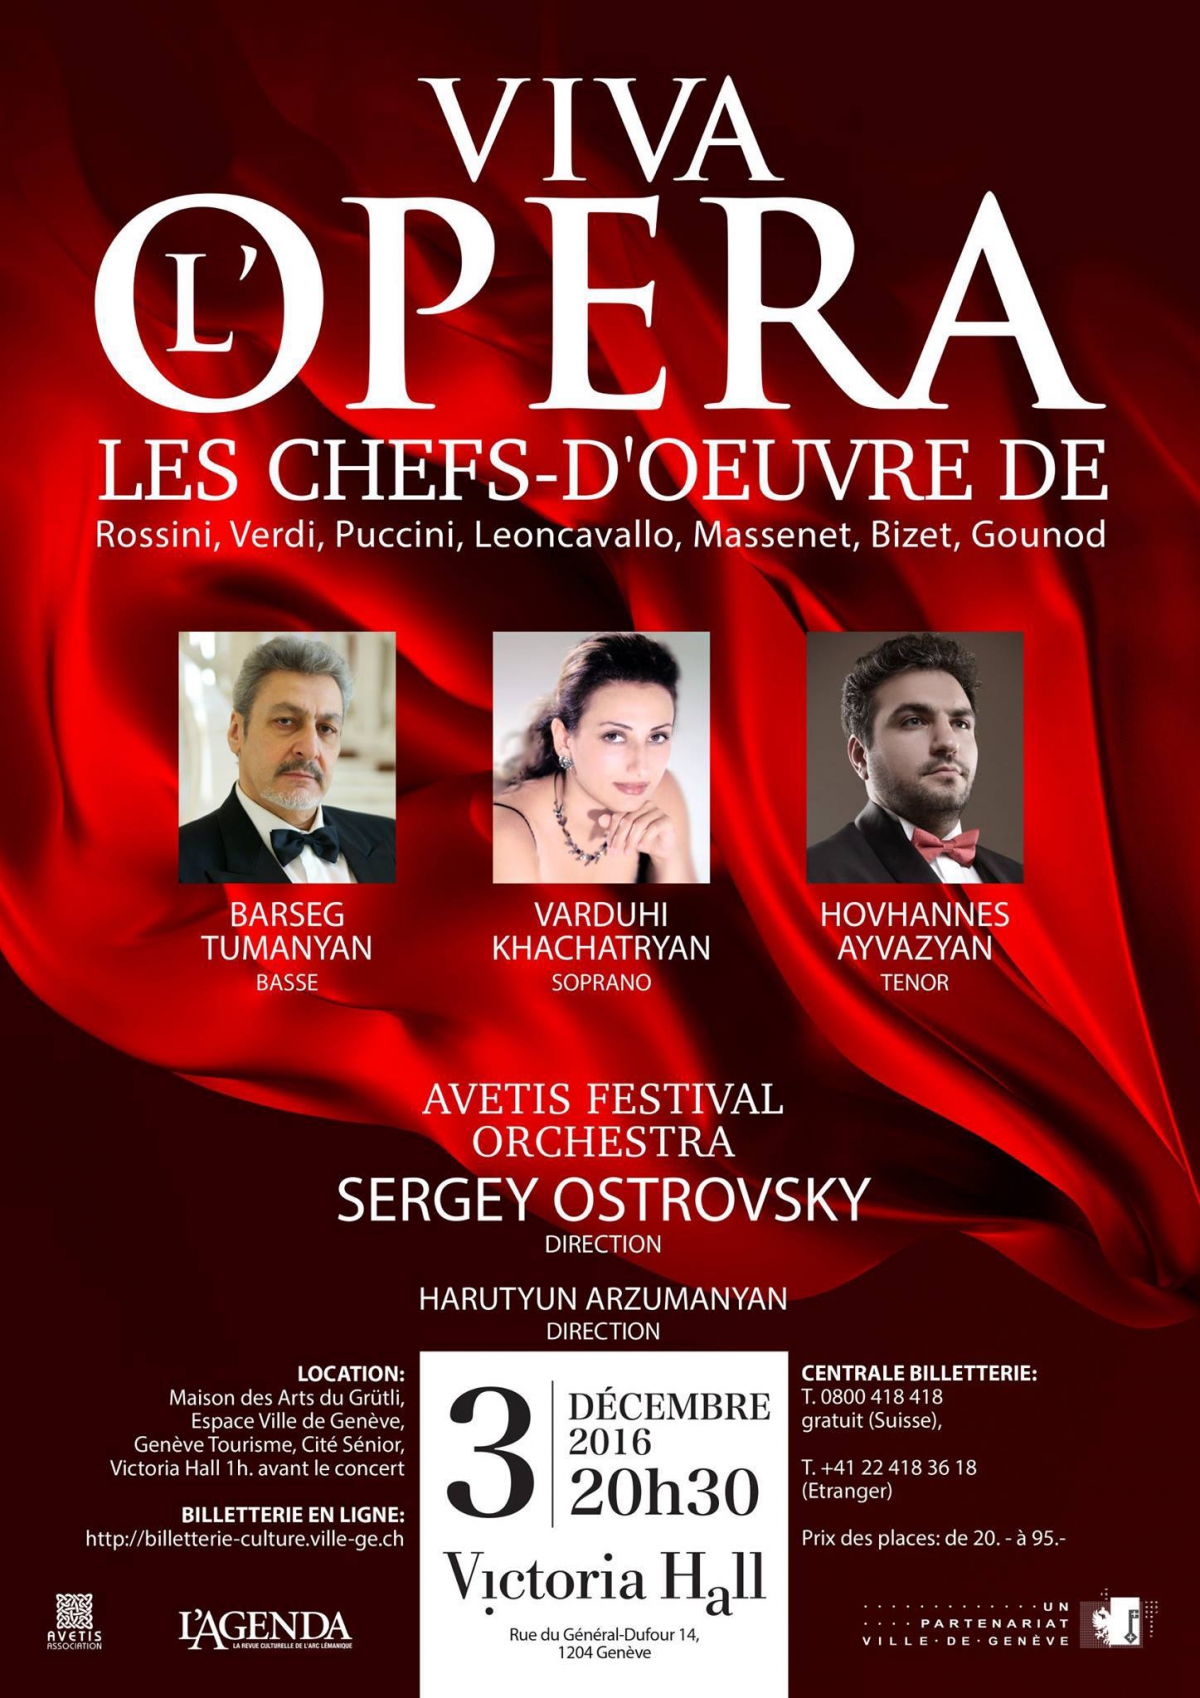 Viva Opera Les Chefs- D'Oeuvrs.jpg